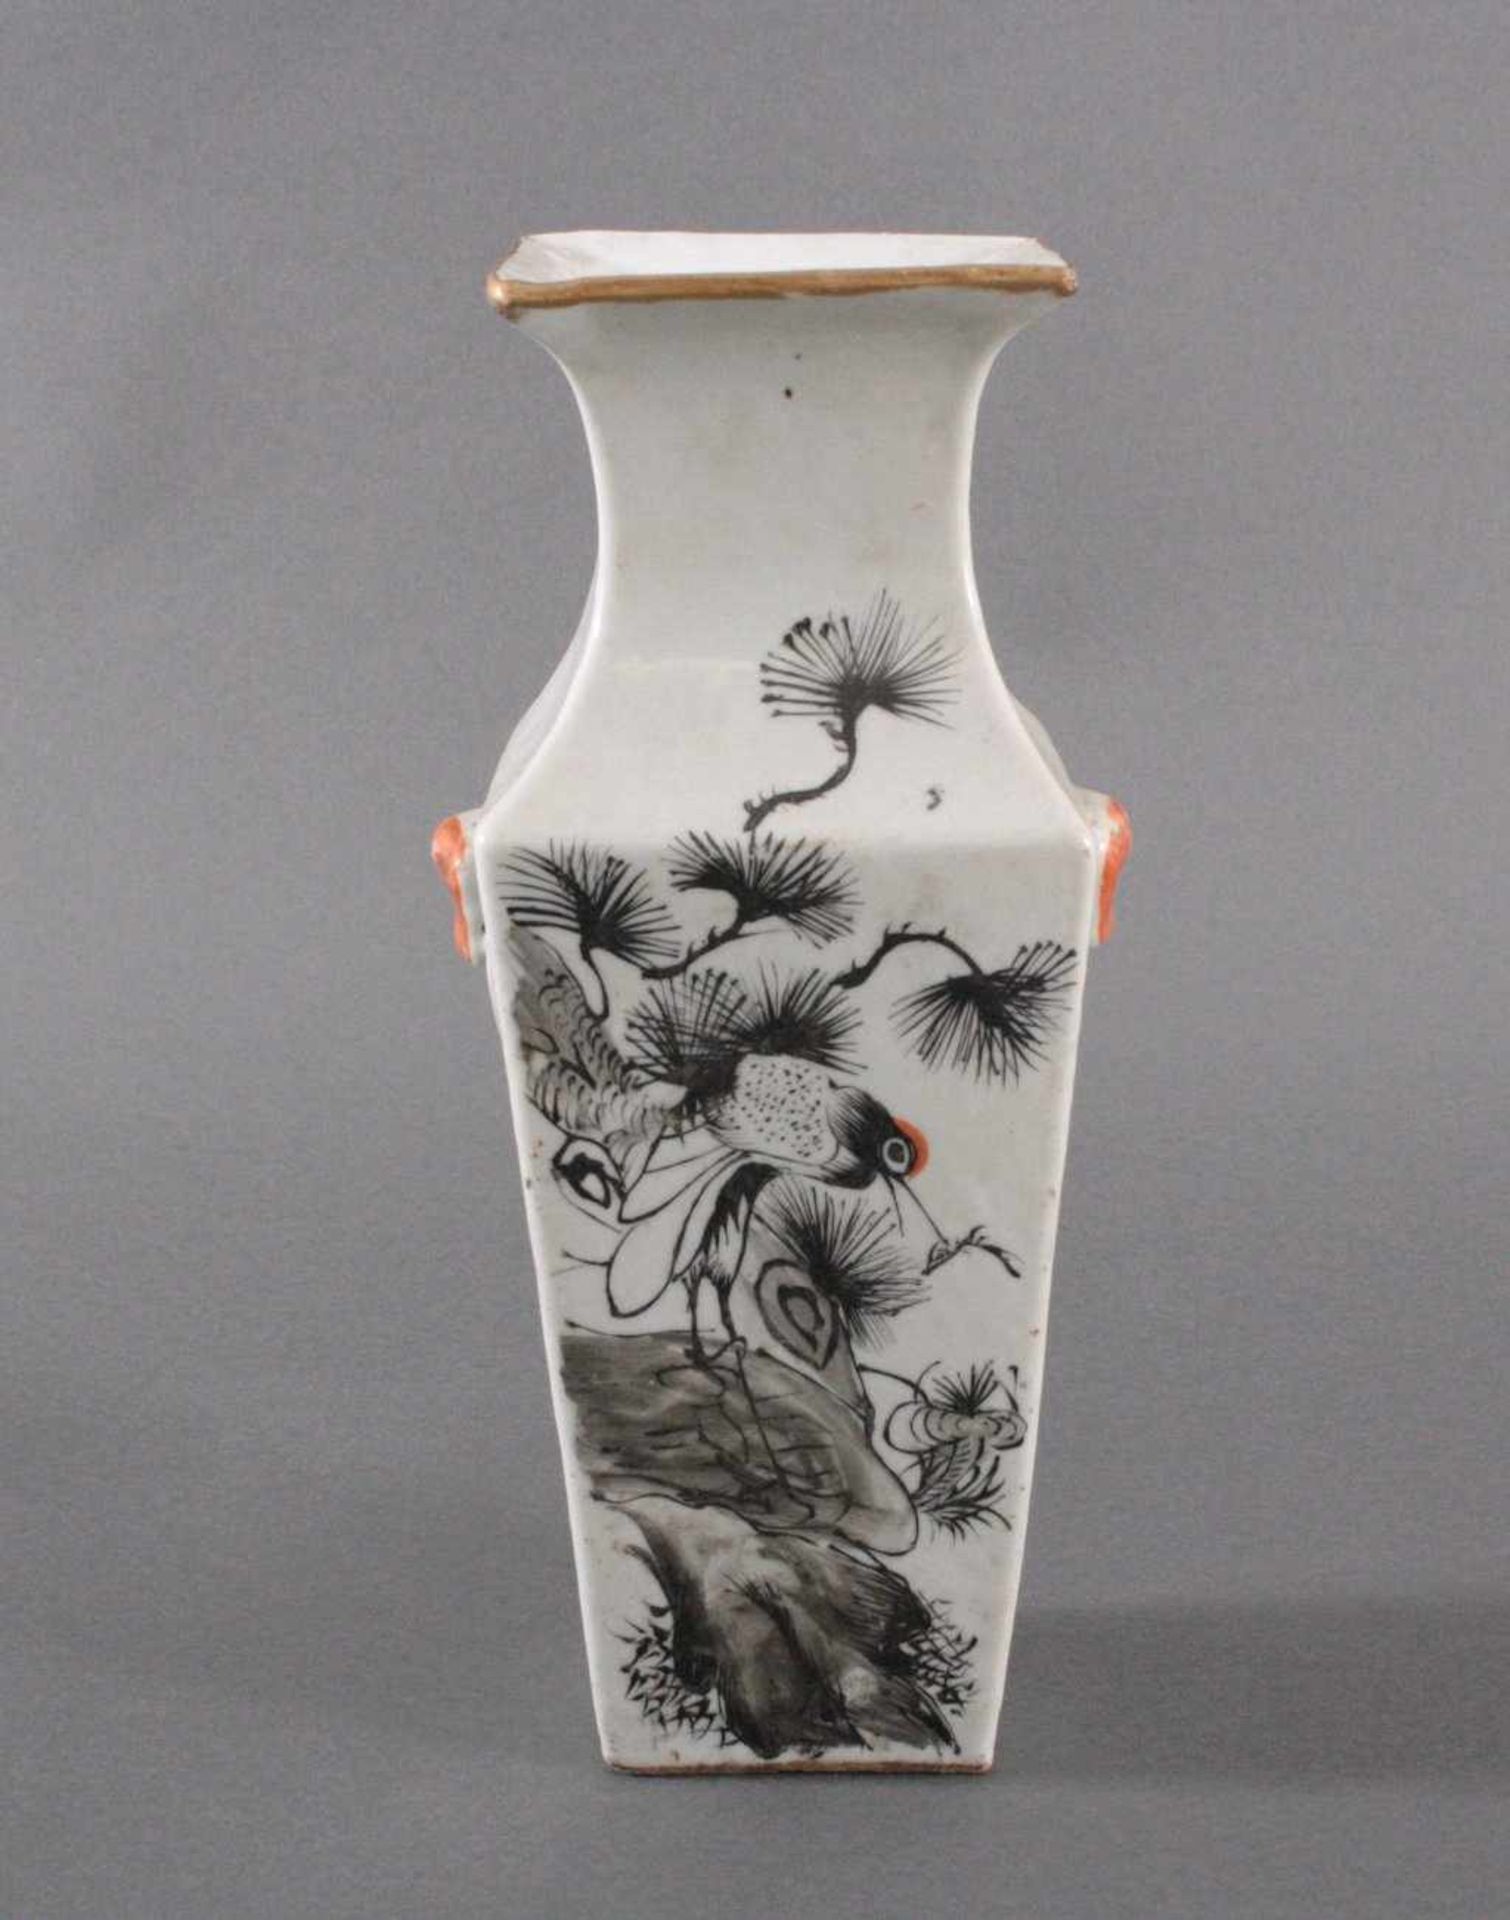 China-Vase um 1900Zylindrische Form, Porzellanvase mit weißer Glasur,gelb grundig mit umlaufender - Bild 3 aus 4